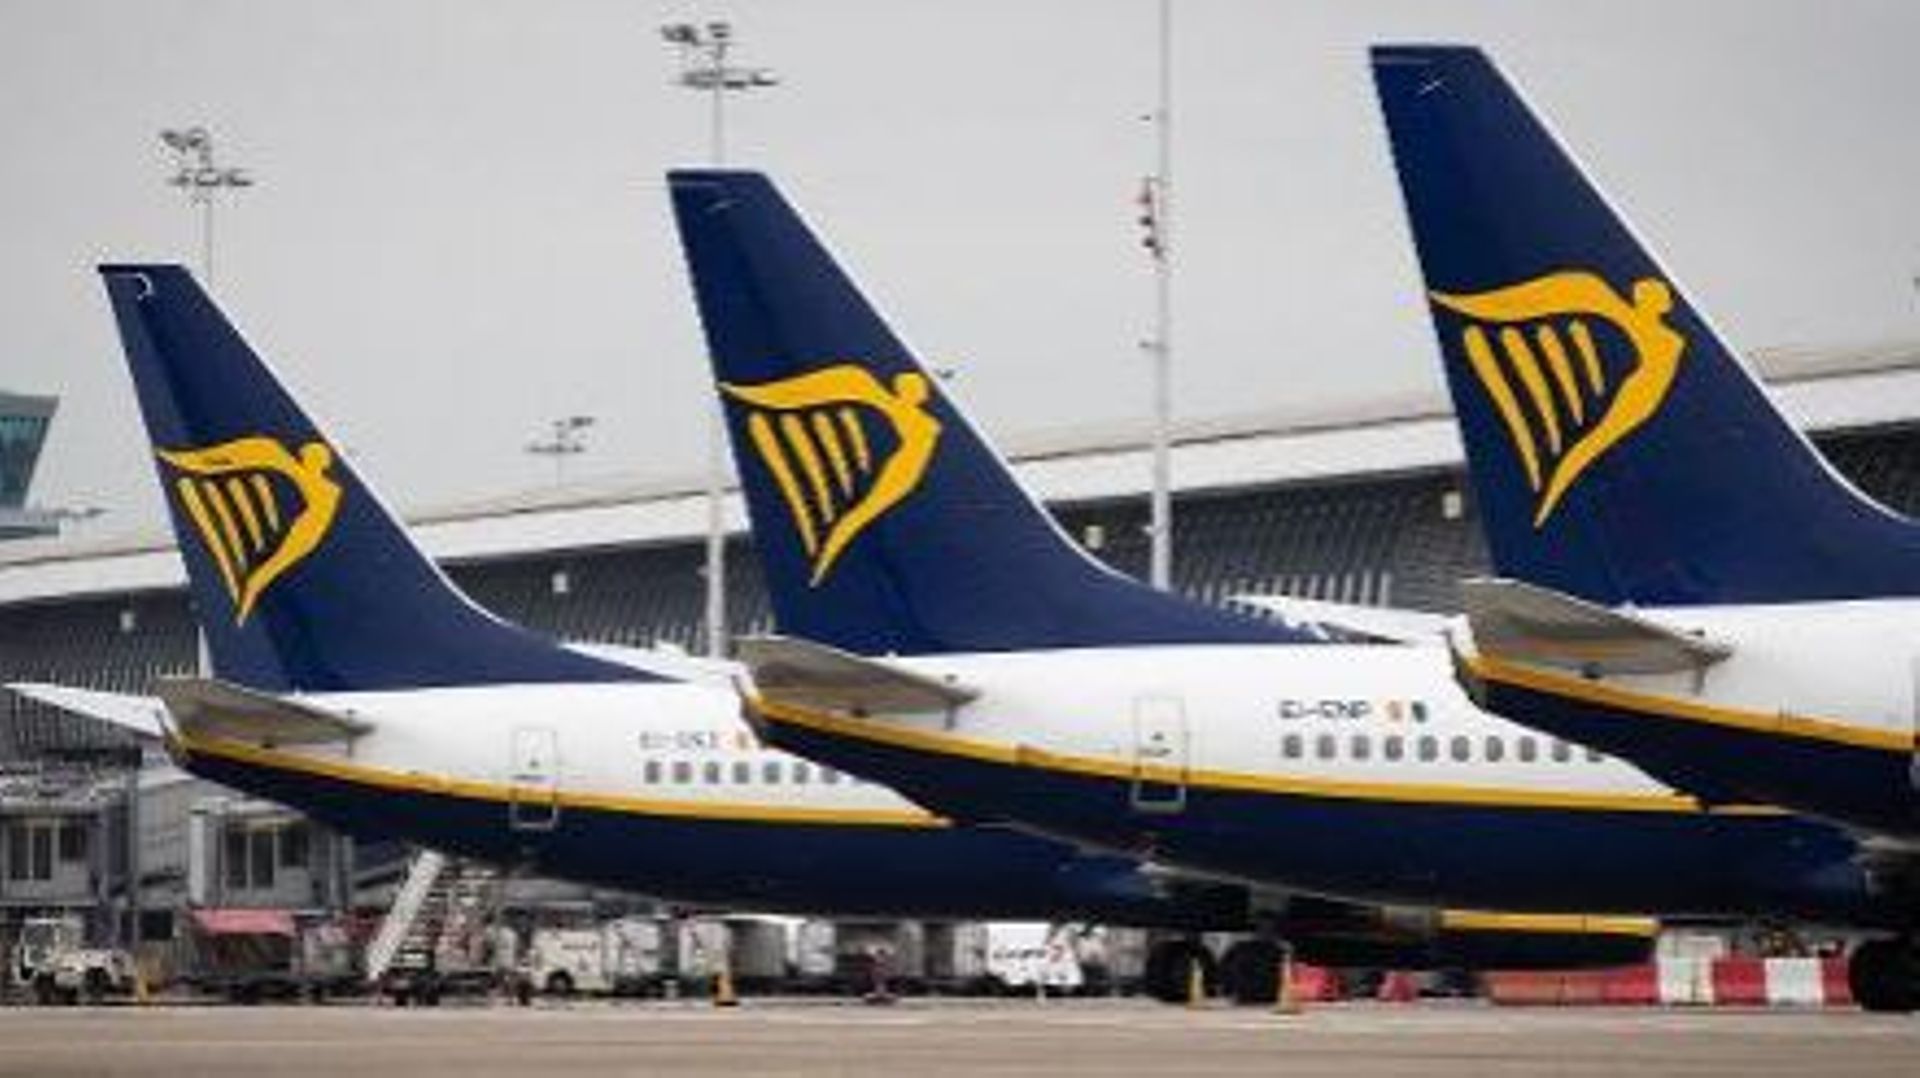 Tensions sociales chez Ryanair - Un tiers des vols Ryanair annulés vendredi à Brussels Airport